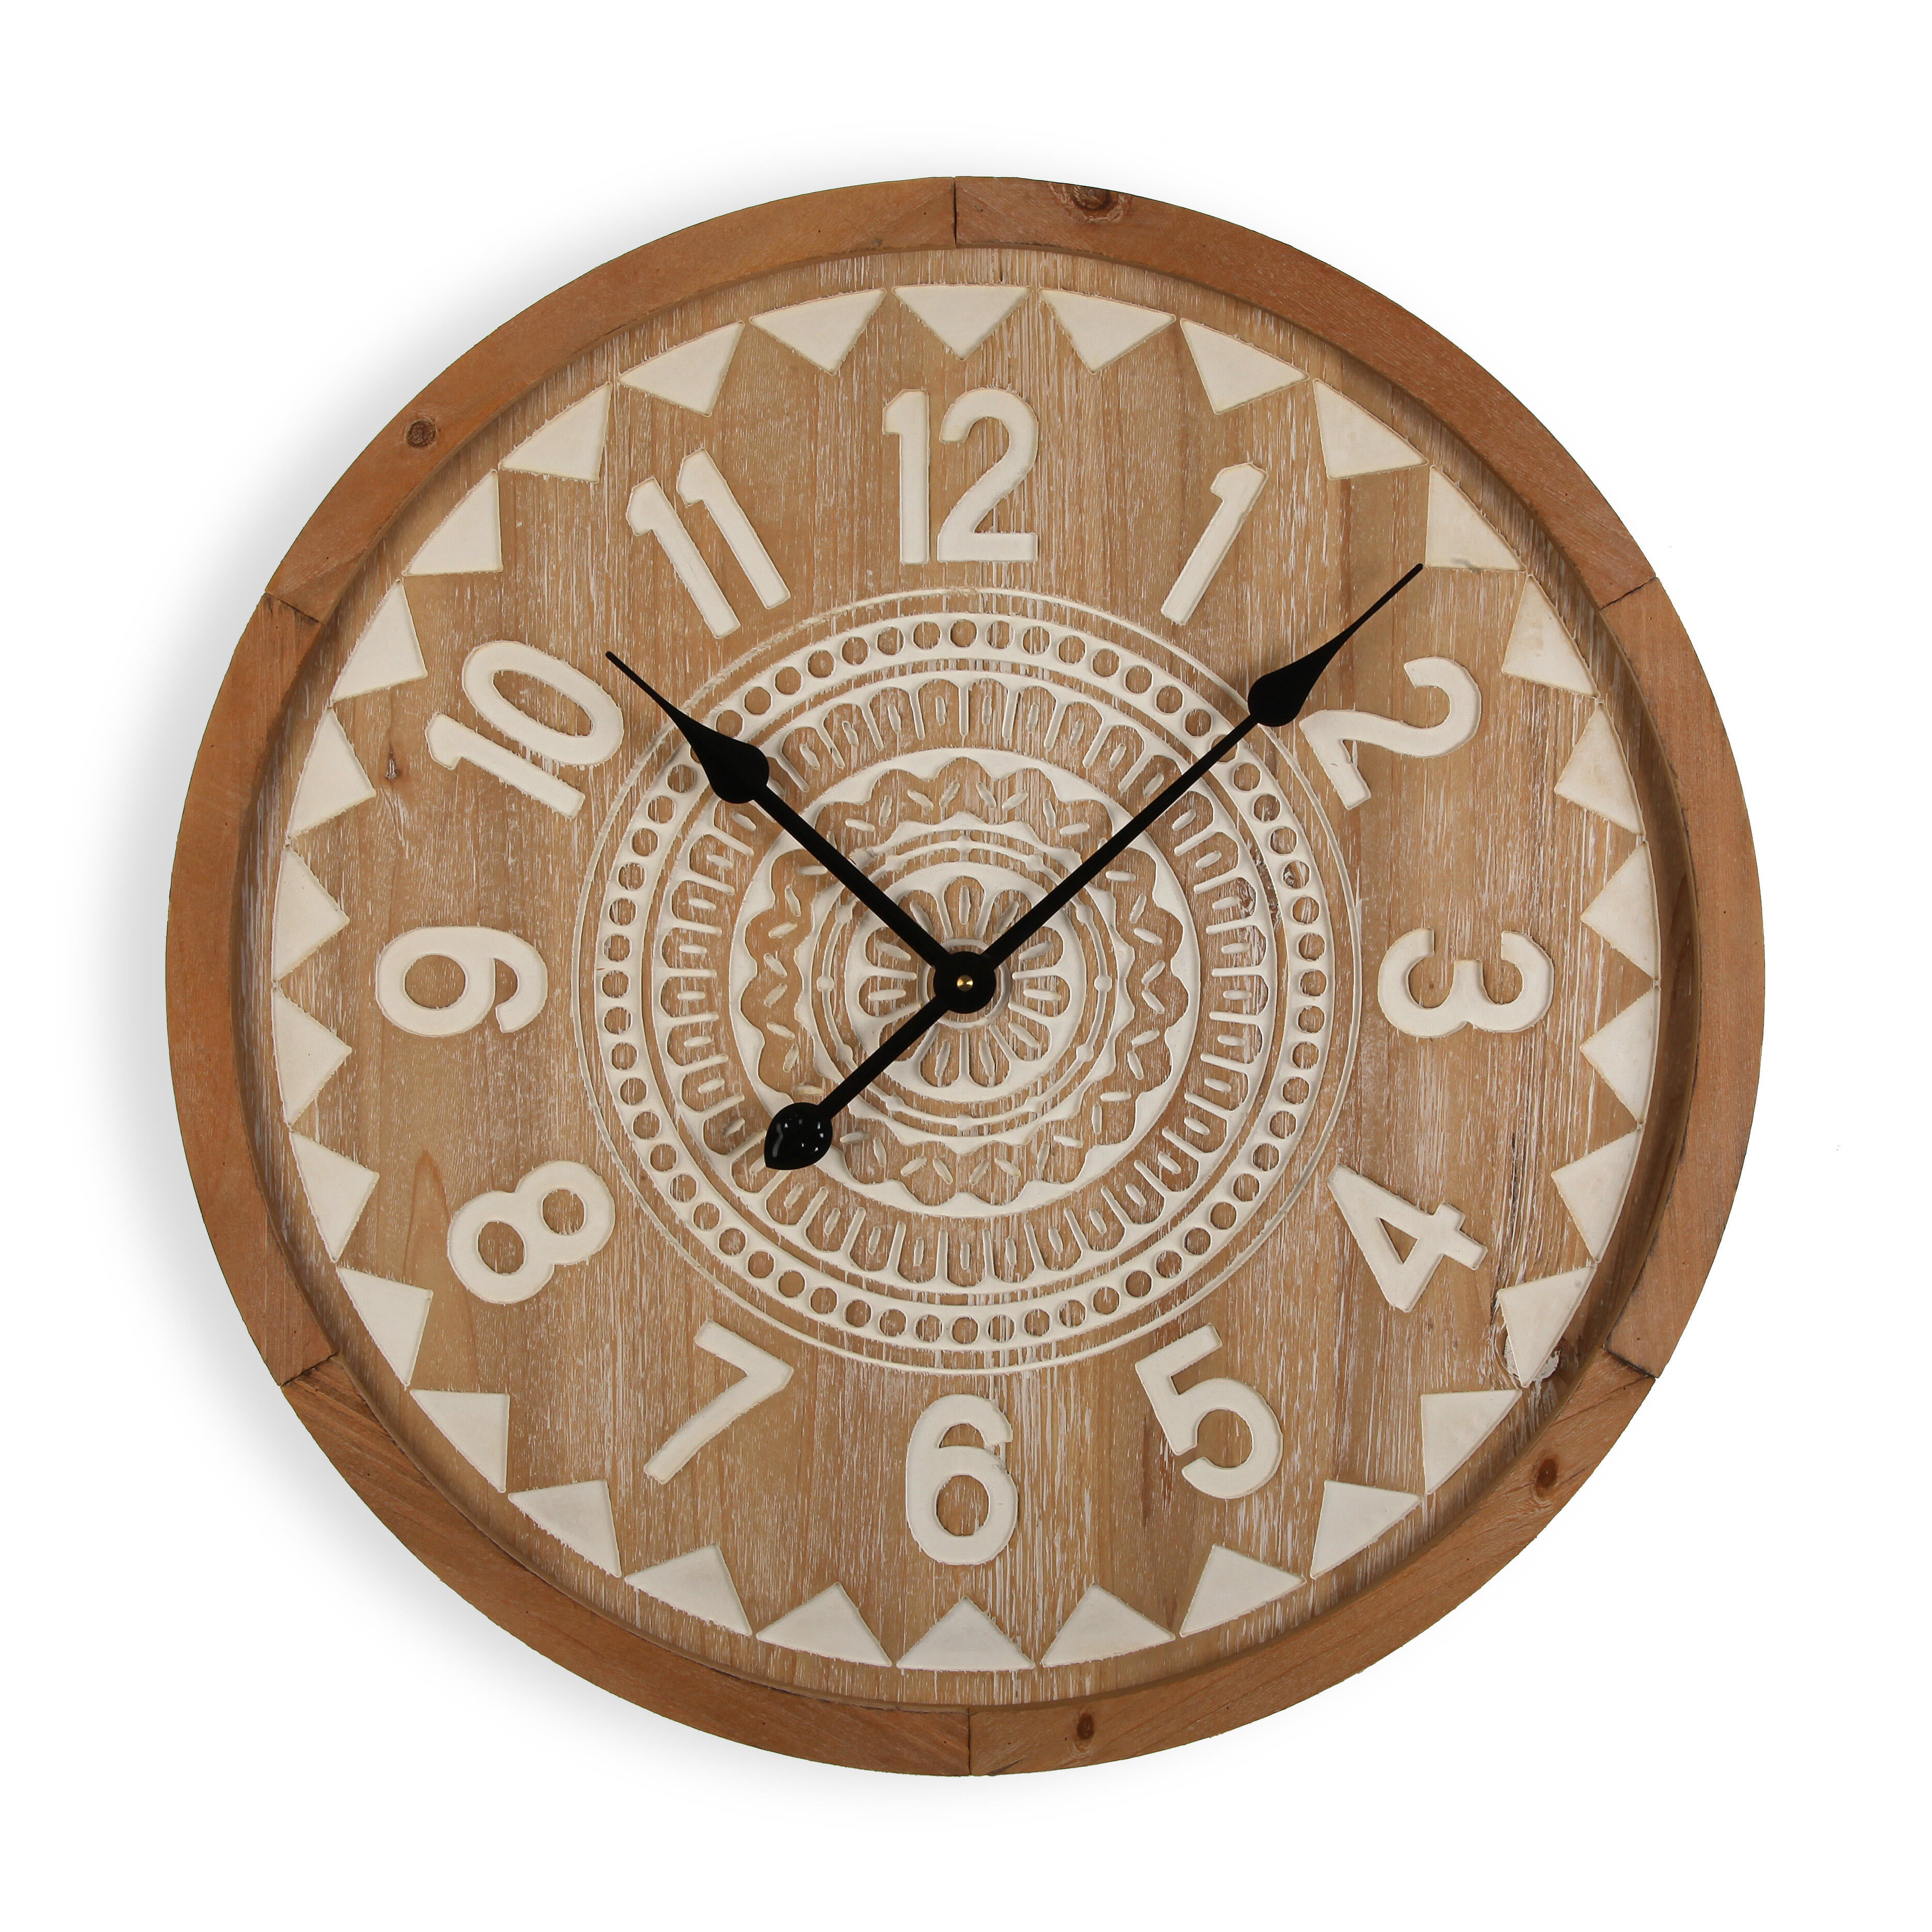 Reloj de pared redondo madera clásico versa de 60 cm